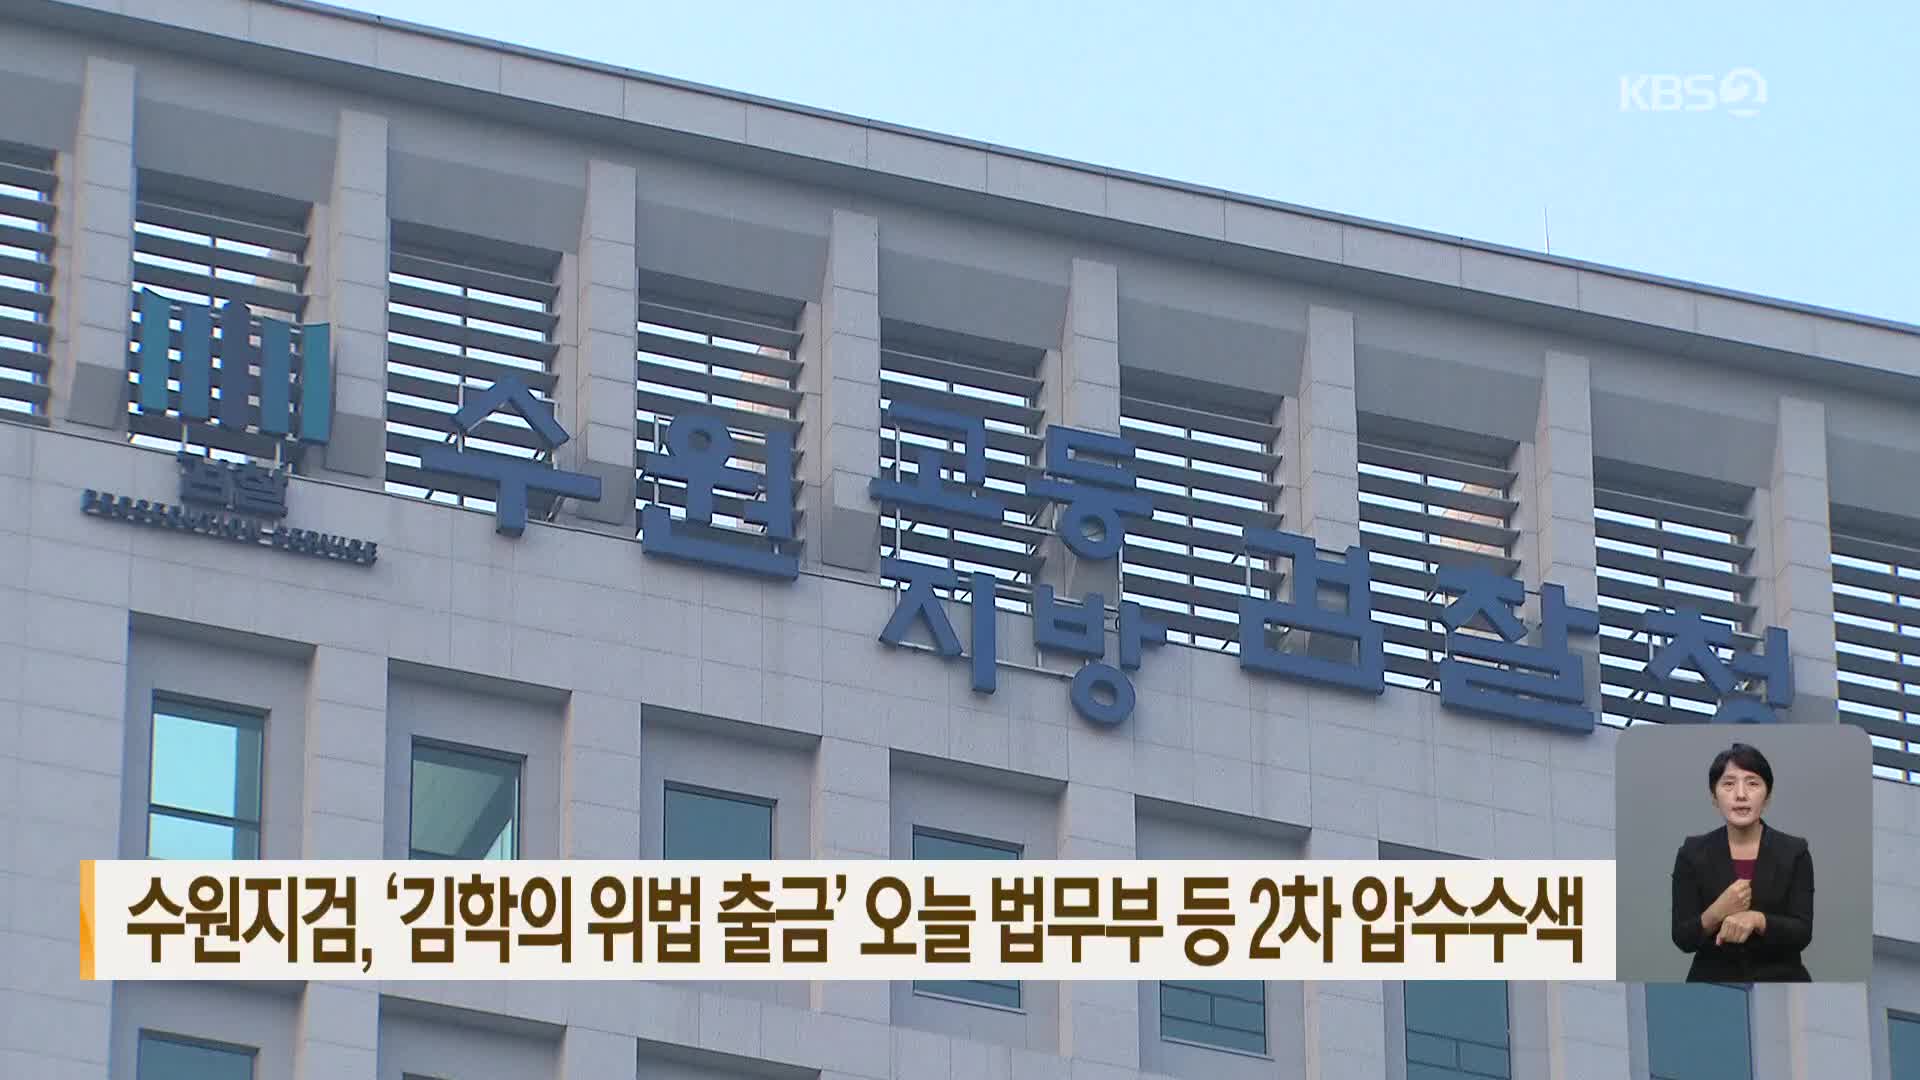 수원지검, ‘김학의 위법 출금’ 오늘 법무부 등 2차 압수수색